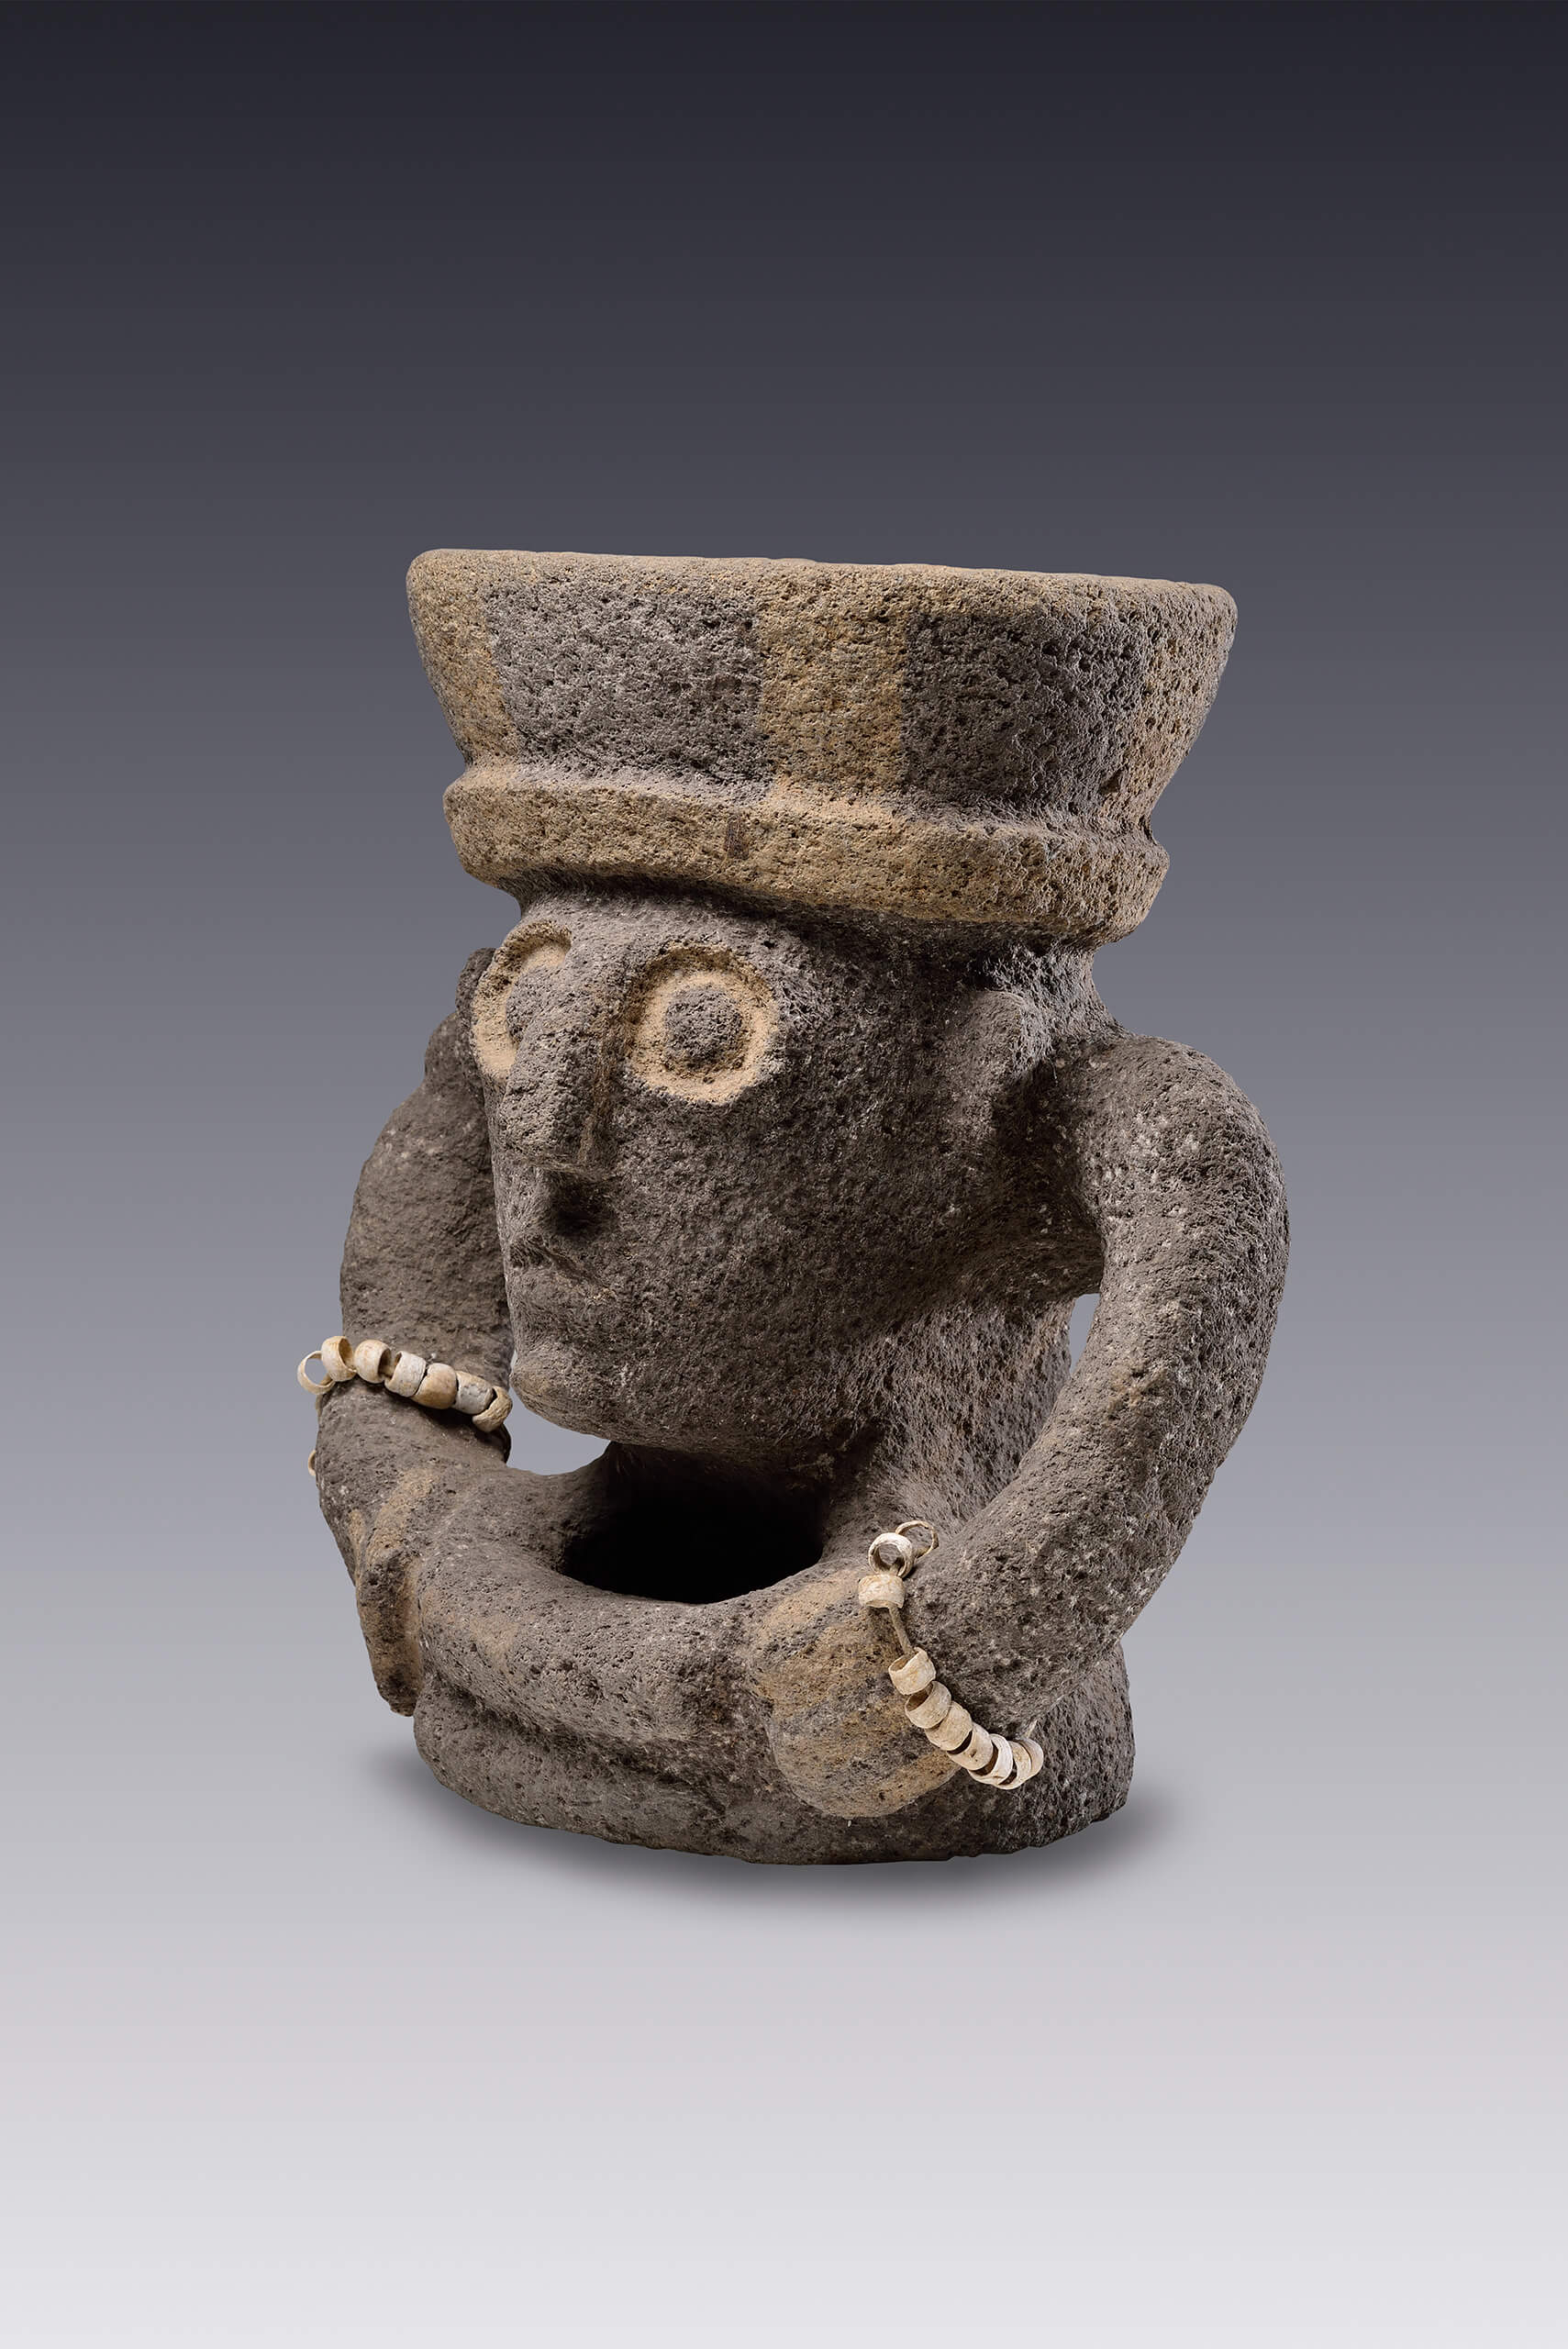 Brasero doble del dios del fuego | El México antiguo. Salas de Arte Prehispánico | Museo Amparo, Puebla